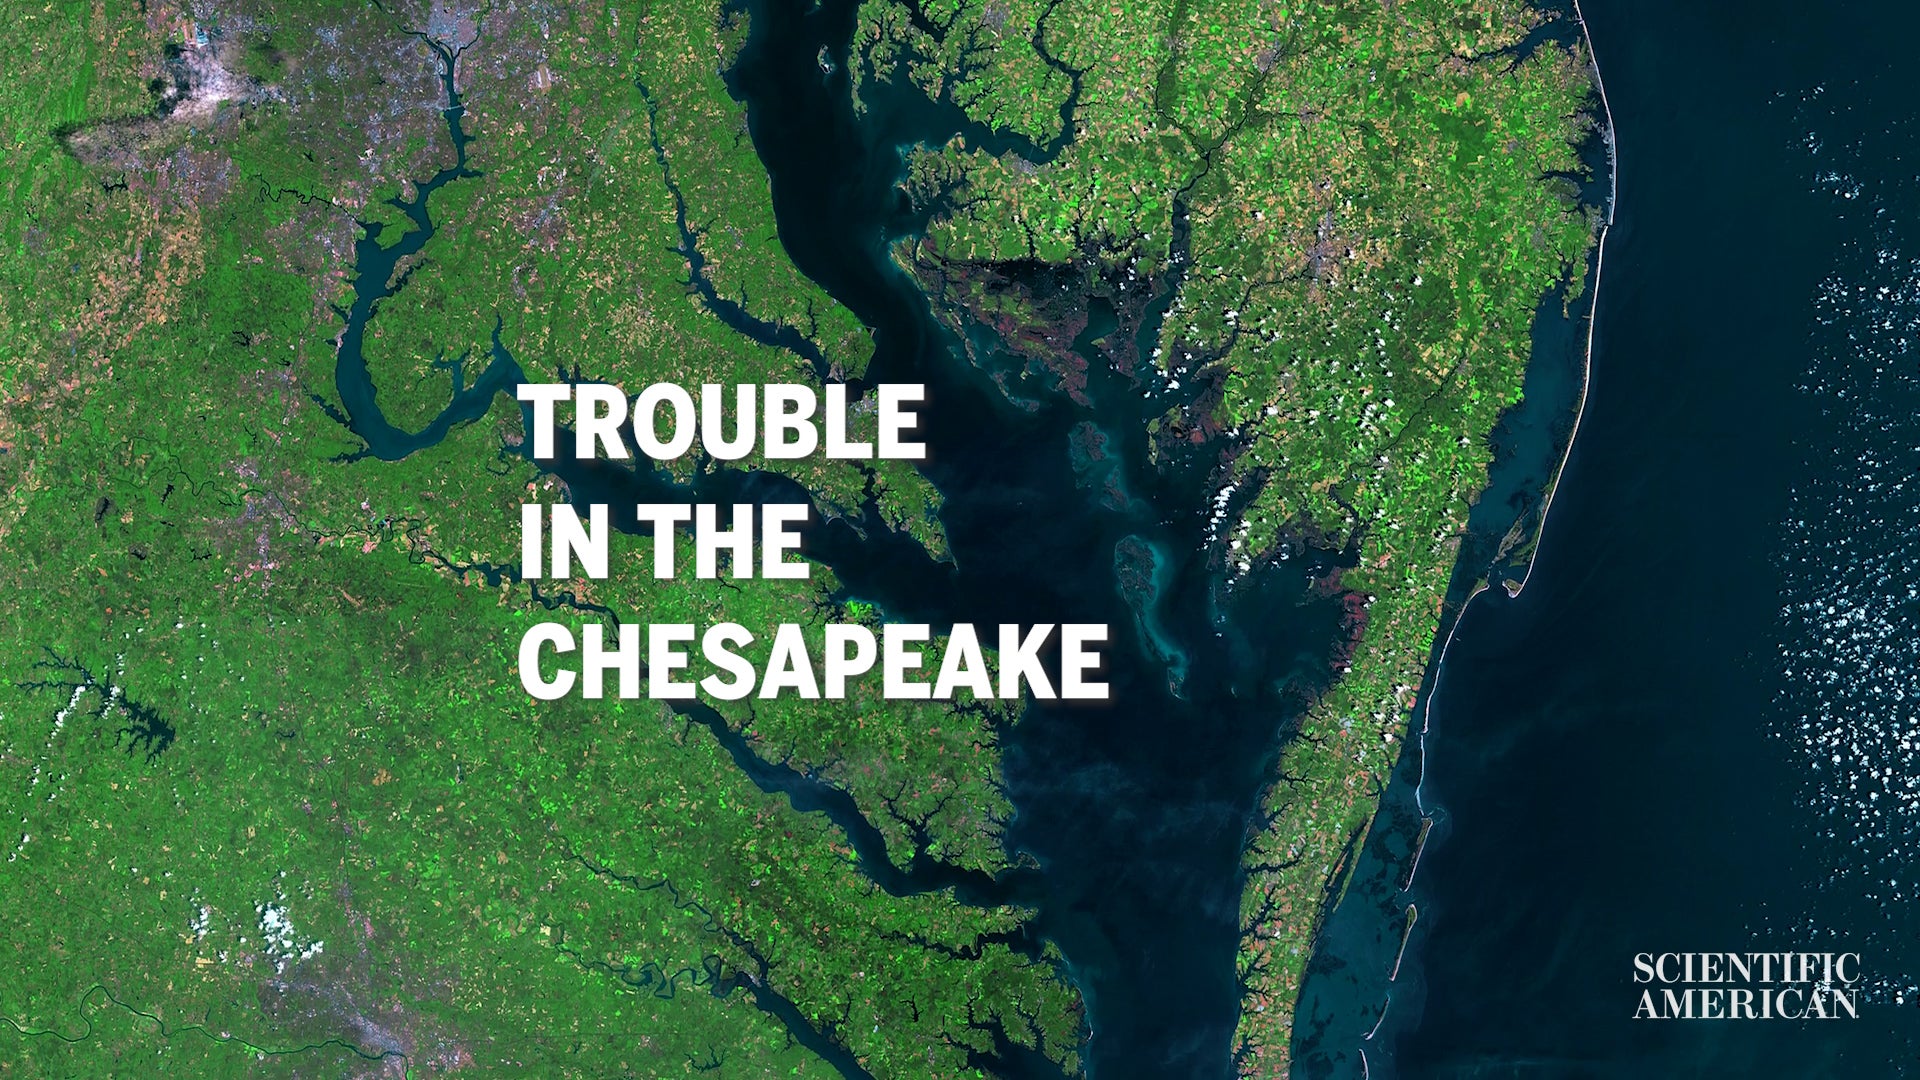 Chesapeake Körfezi Ölü Bölge Olacak mı?